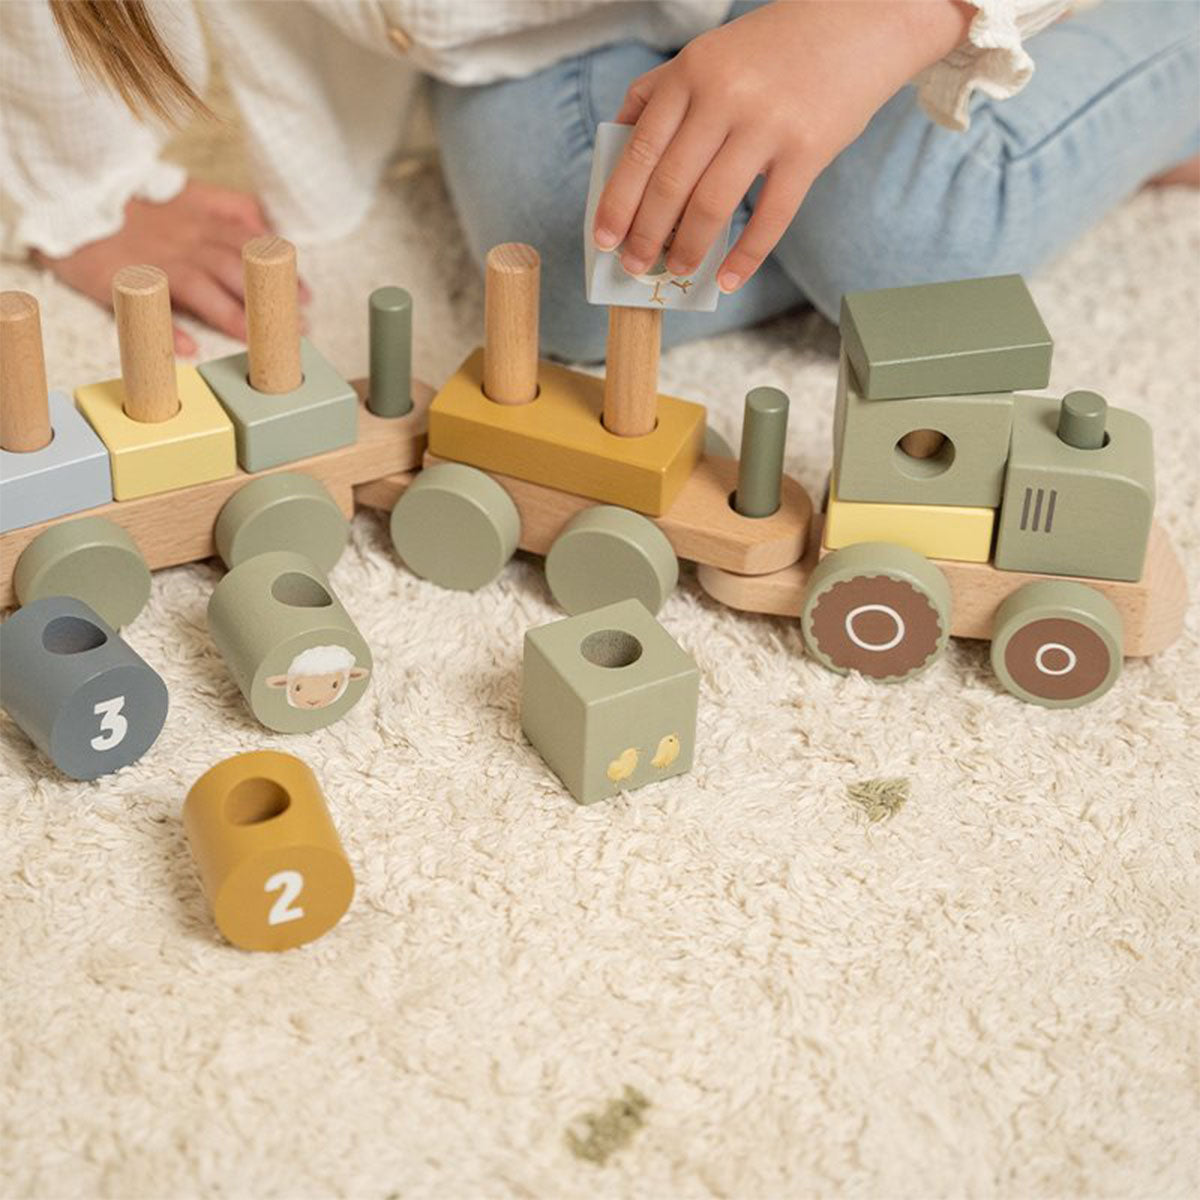 Is jouw kindje fan van treinen? Dan is deze Little Dutch blokkentrein tractor little farm een must have voor in de speelgoedcollectie. Dankzij de houten blokken in verschillende vormen en kleuren wordt de creativiteit en fantasie van je kindje gestimuleerd. VanZus